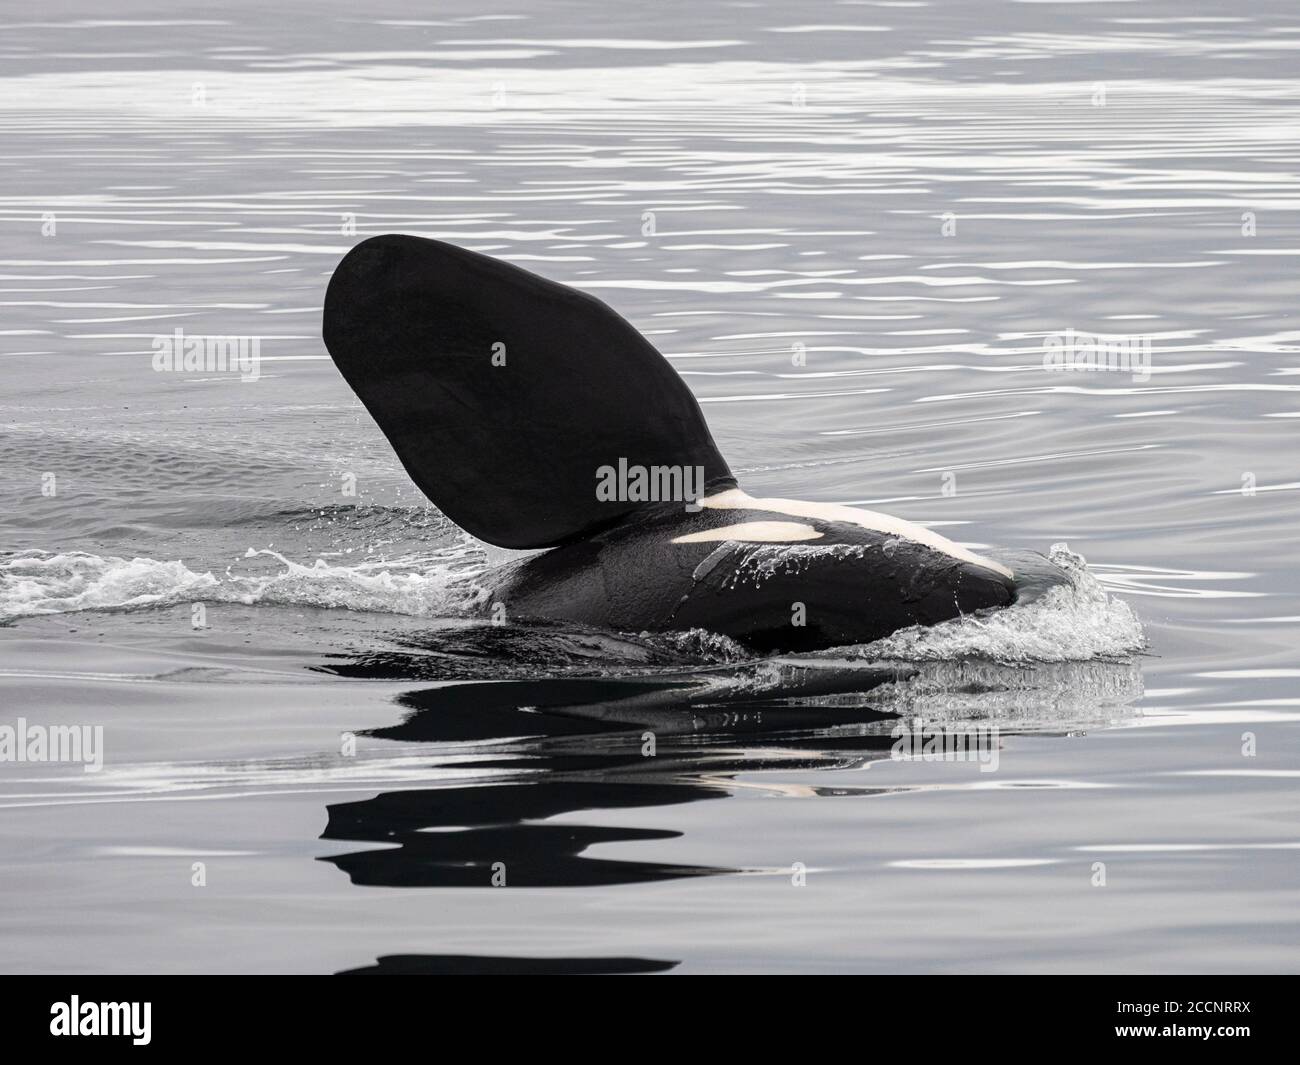 Épaulard adulte, Orcinus orca, ailerons pectoraux au large de l'île Saint-Paul, îles Pribilof, Alaska. Banque D'Images